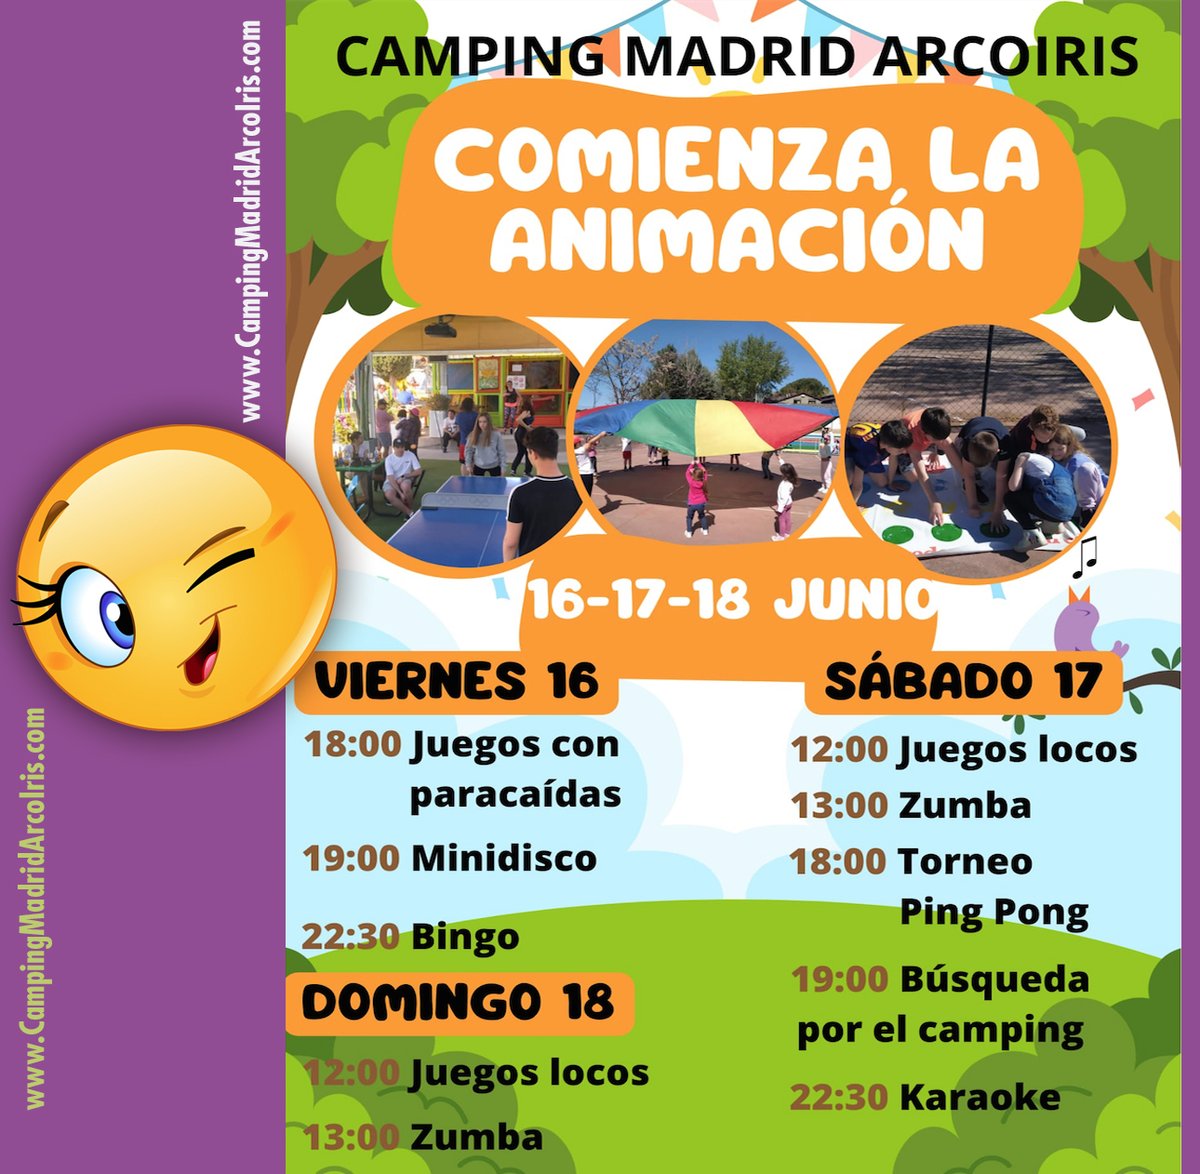 💦💦OPEN POOL 17 junio💦💦 y ANIMACIÓN
#OpenPool #escapadaMadrid #actividadesEnMadrid #Splash #Ecofriendly #PromociónVerano #bungalows #Suites #turismoMadrid #Madrid #Naturaleza #CampingMadrid #BusCampingMadrid #Animación @CampingMadridArcoIris